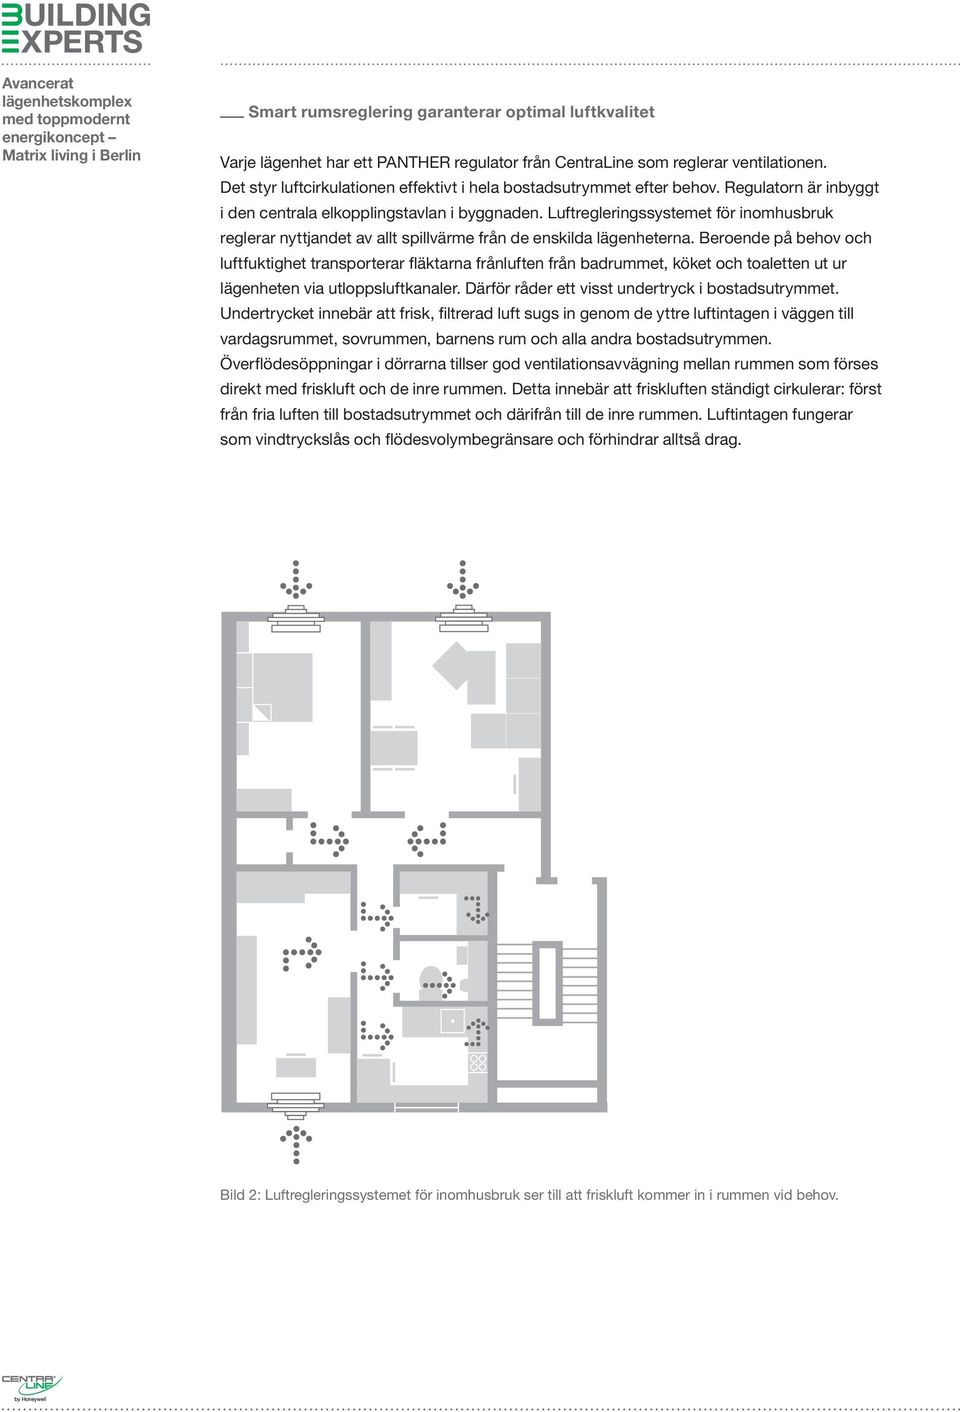 Luftregleringssystemet för inomhusbruk reglerar nyttjandet av allt spillvärme från de enskilda lägenheterna.